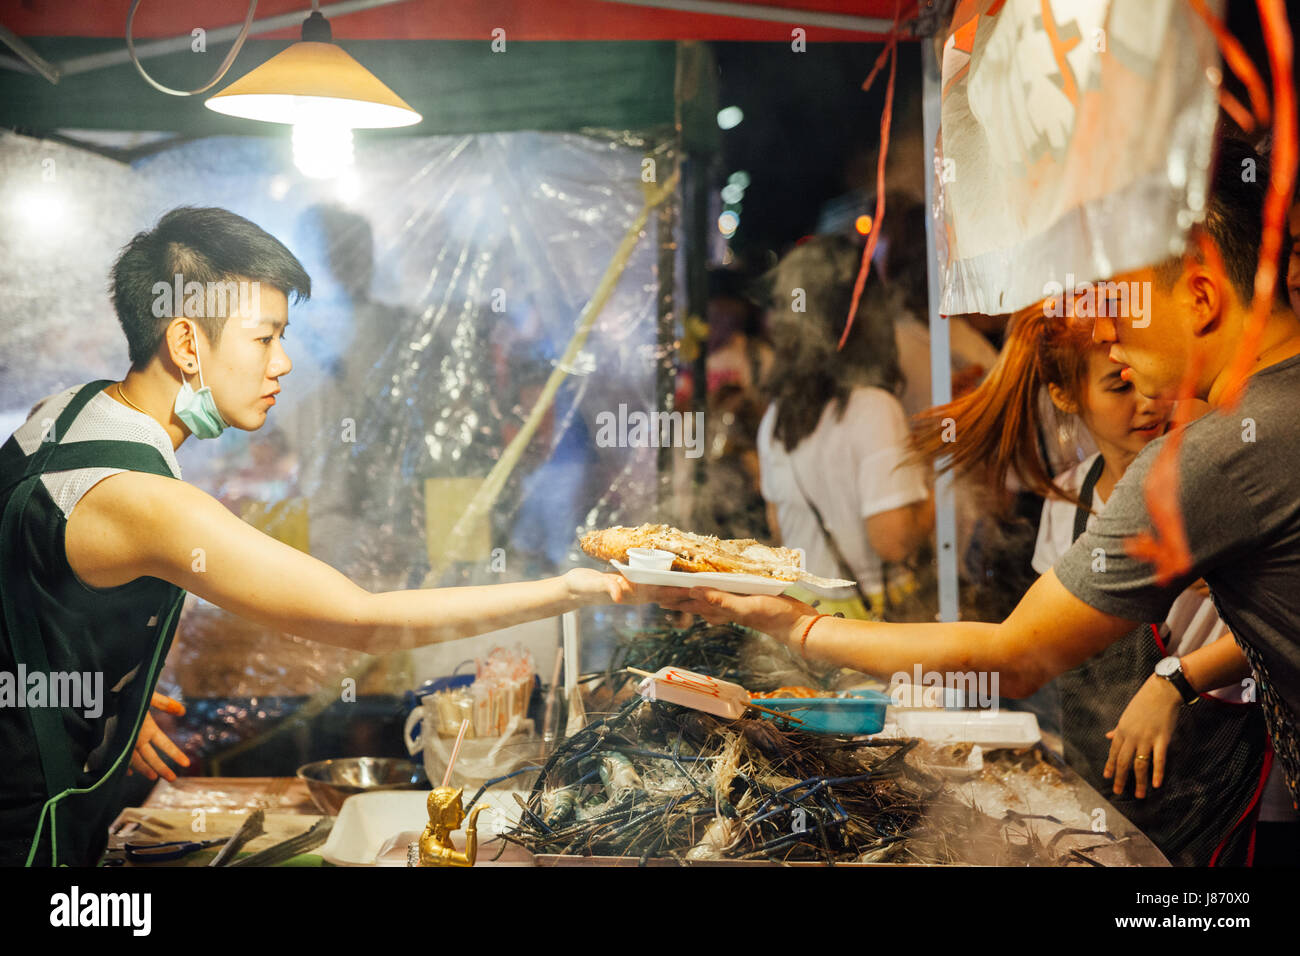 CHIANG MAI, THAÏLANDE - 27 août : le vendeur alimentaire cuisiniers et vend des poissons et fruits de mer au marché du samedi soir (walking street) Le 27 août 2016 dans Chi Banque D'Images